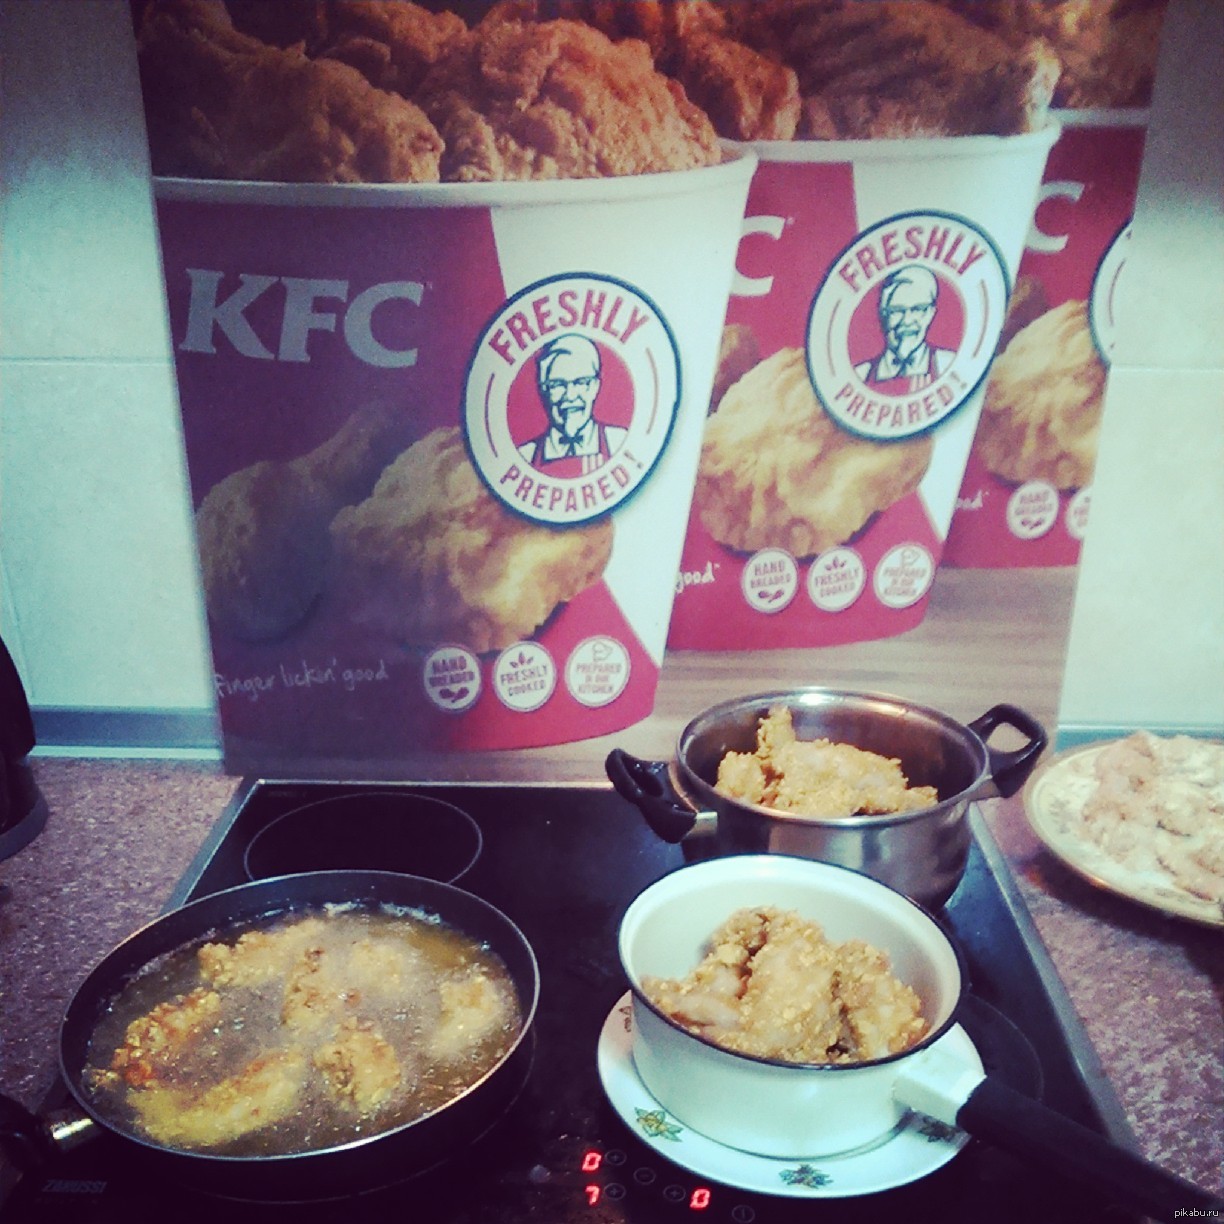  KFC     KFC.       , .   :)  P.S.     !